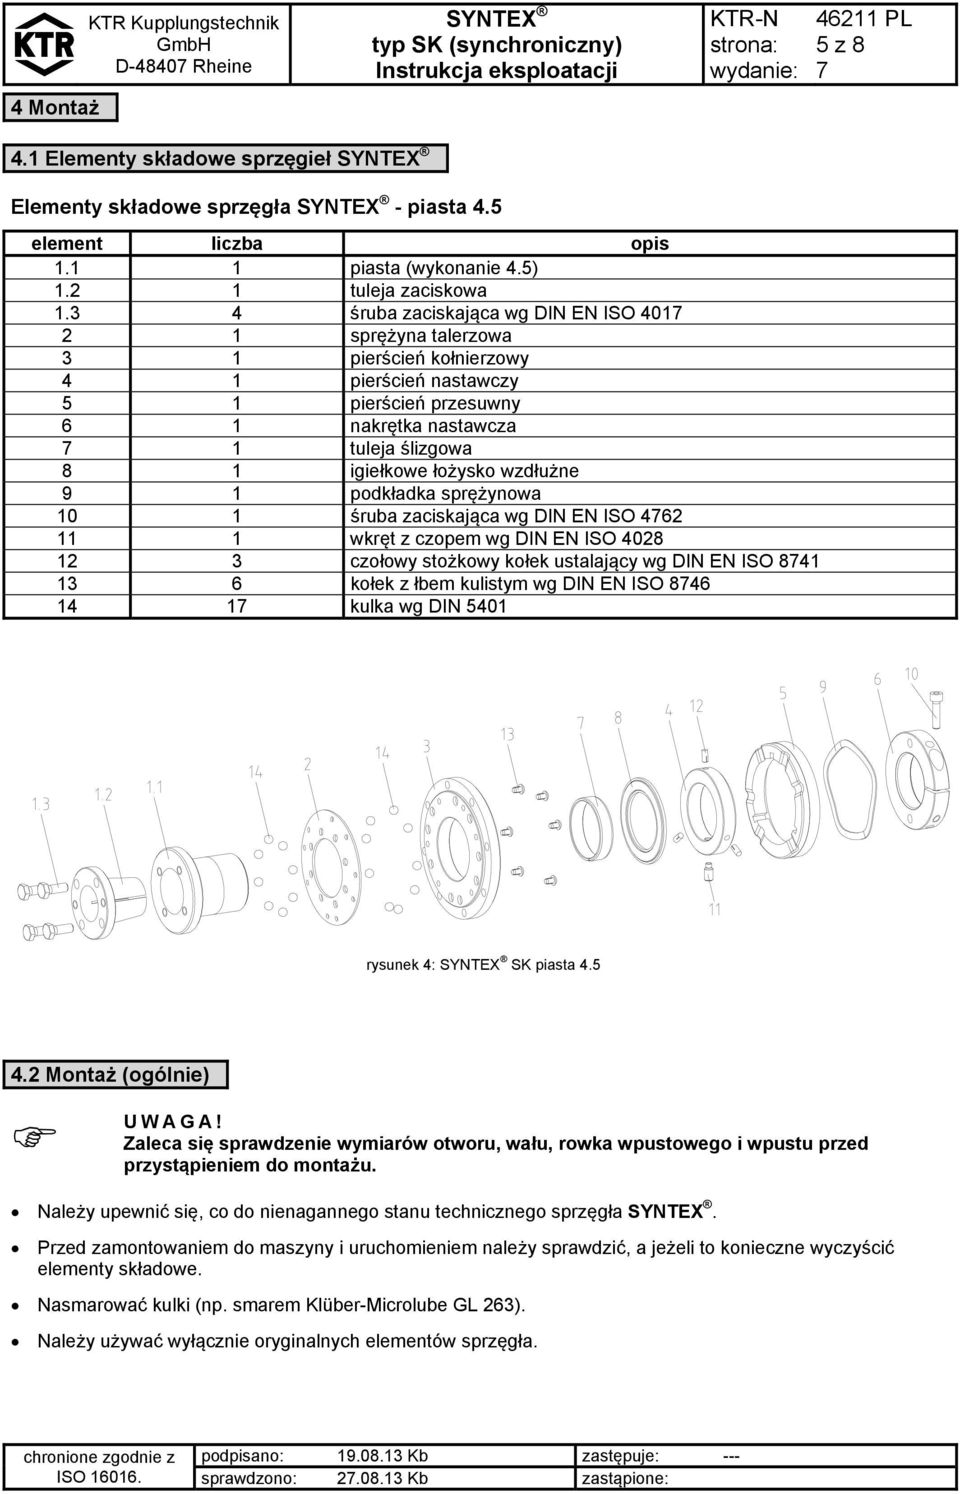 wzdłużne 9 1 podkładka sprężynowa 10 1 śruba zaciskająca wg DIN EN ISO 462 11 1 wkręt z czopem wg DIN EN ISO 4028 12 3 czołowy stożkowy kołek ustalający wg DIN EN ISO 841 13 6 kołek z łbem kulistym